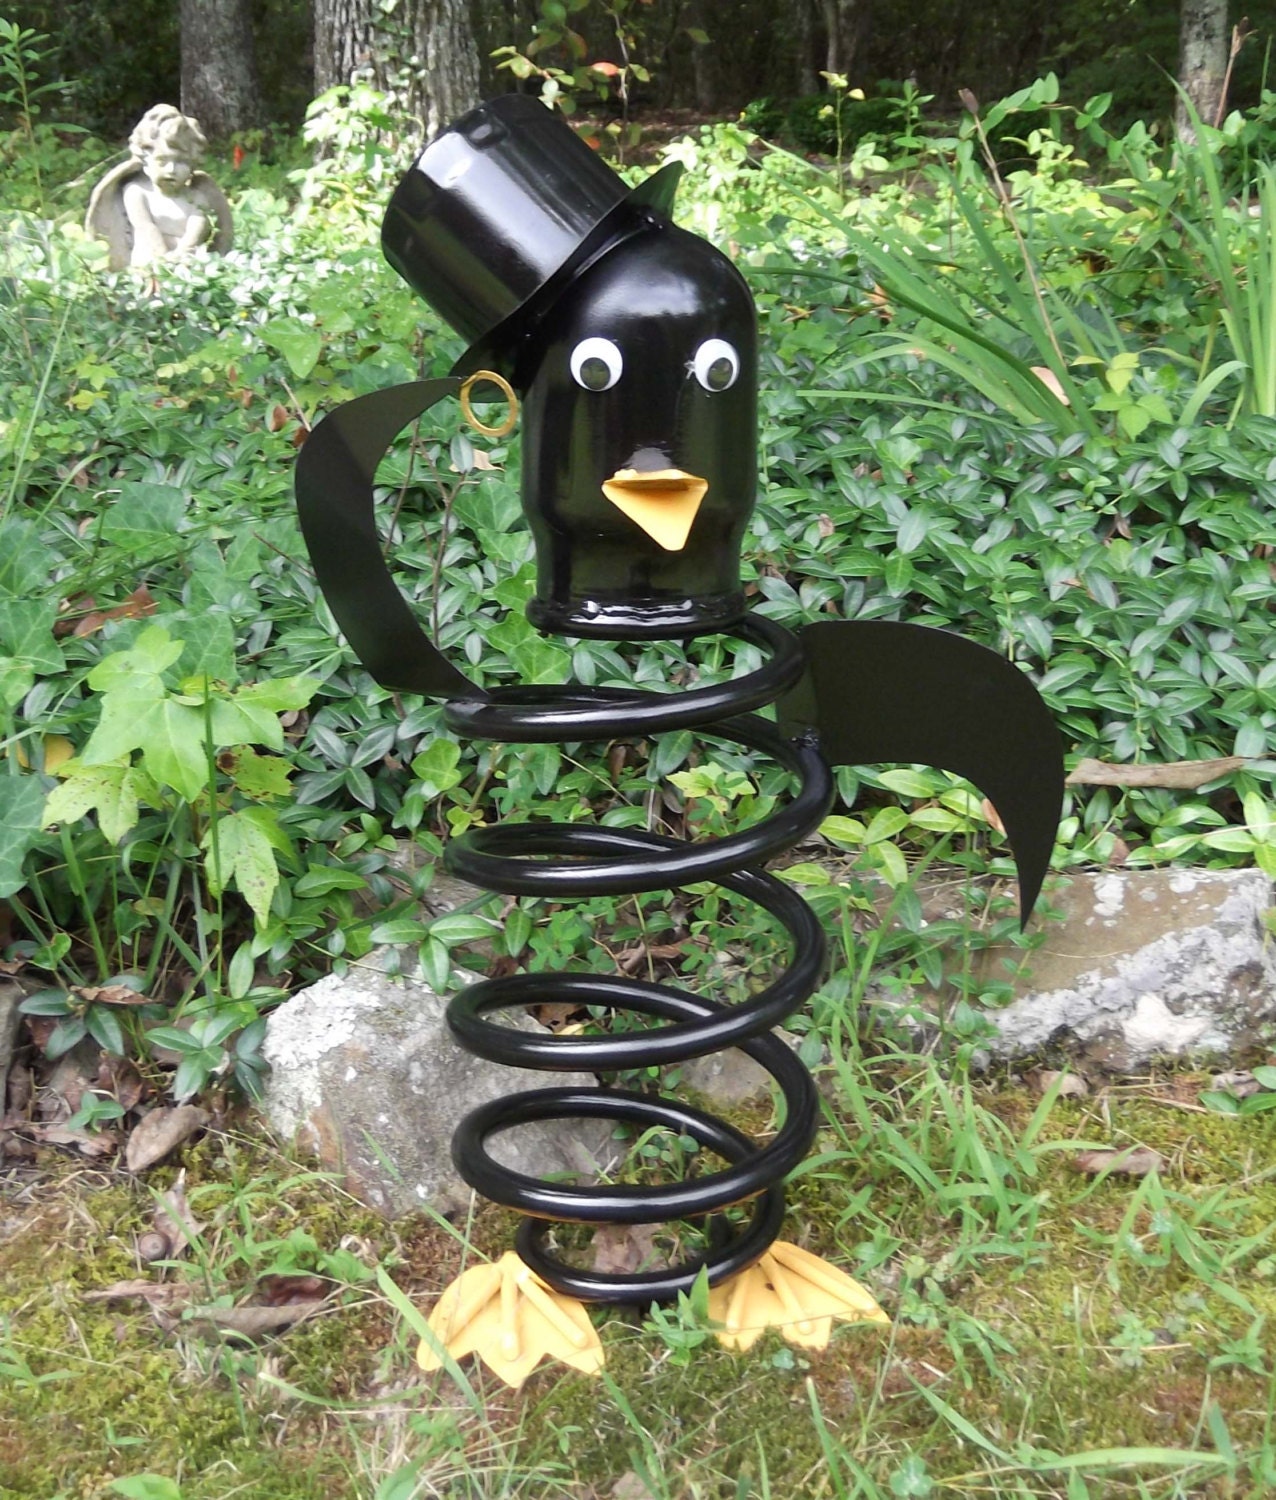 Penguin scrap metal yard art or garden art